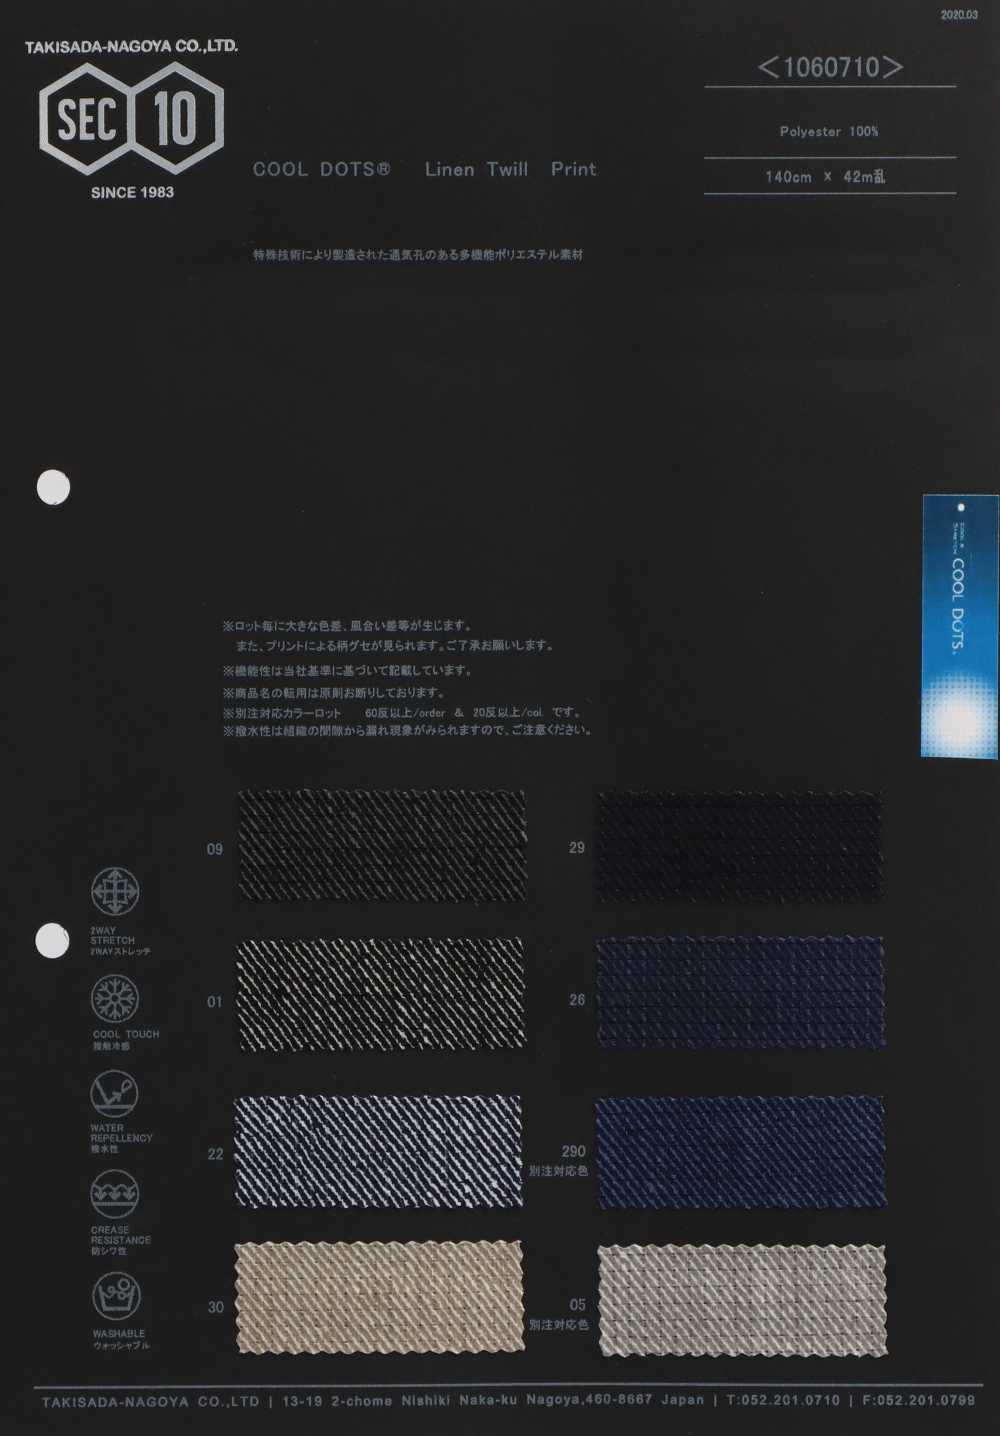 1060710 Impresión De Kersey De COOLDOTS[Fabrica Textil] Takisada Nagoya